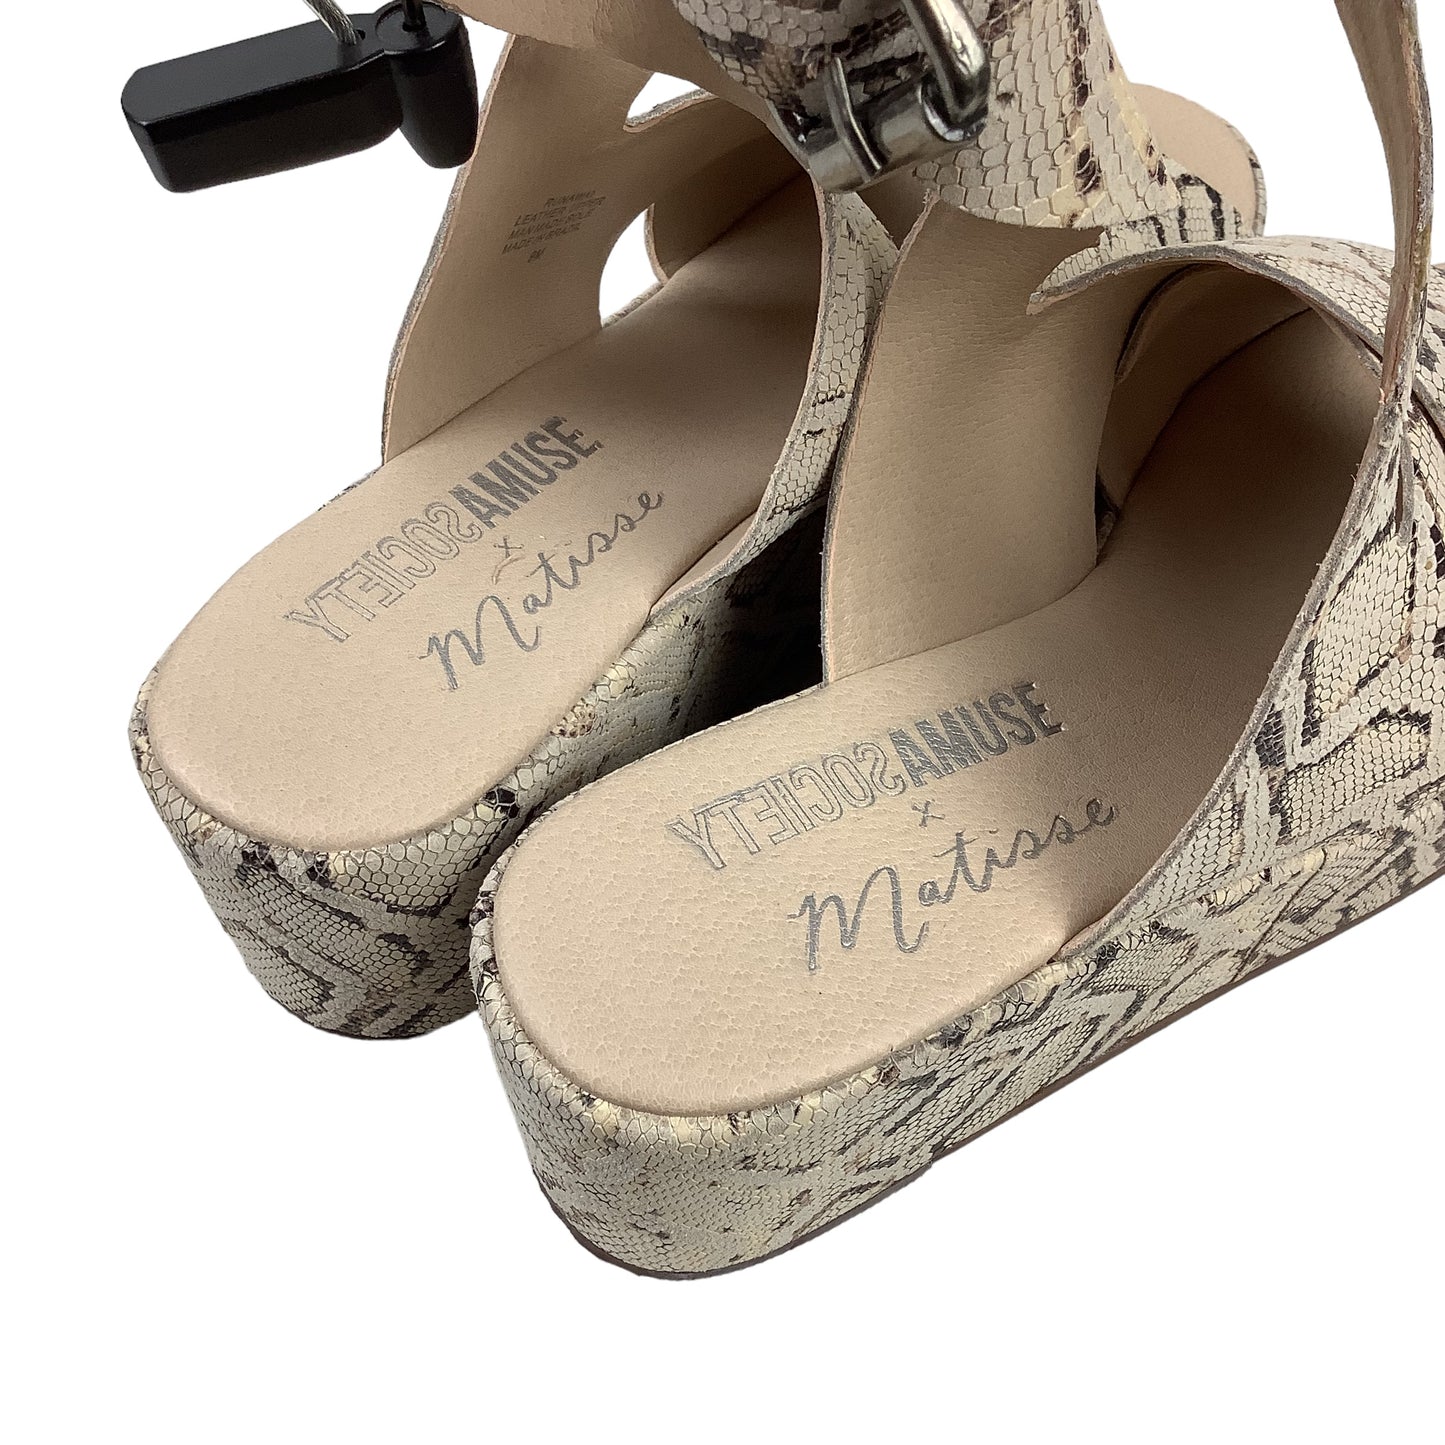 Sandals Heels Platform By Matisse  Size: 9